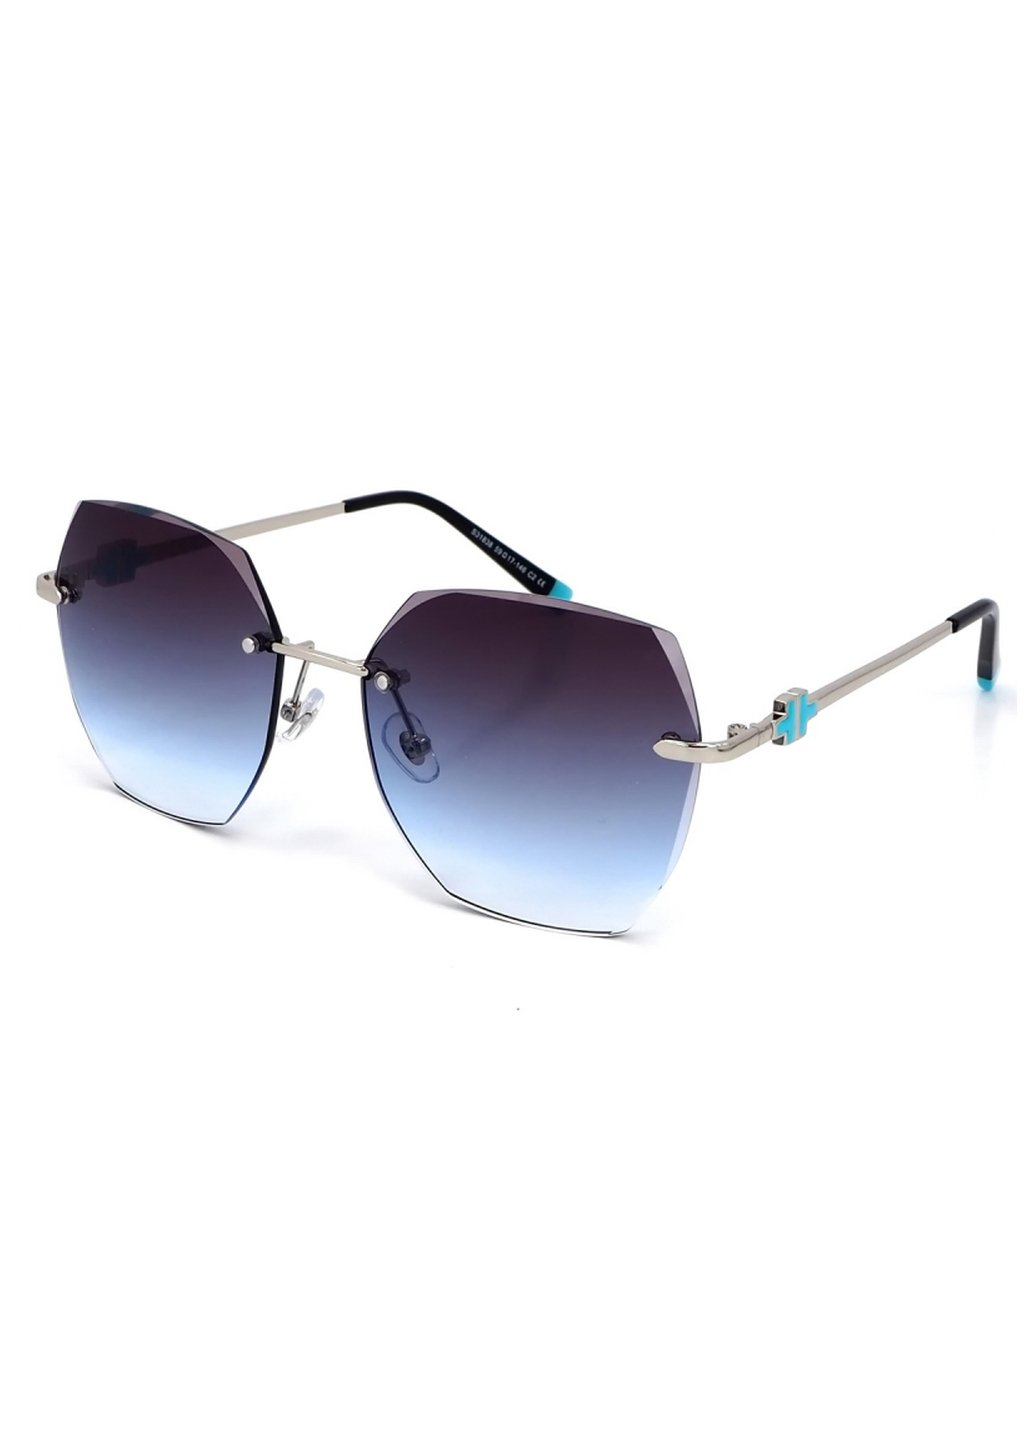 Купить Женские солнцезащитные очки Merlini с поляризацией S31838 117102 - Серый в интернет-магазине